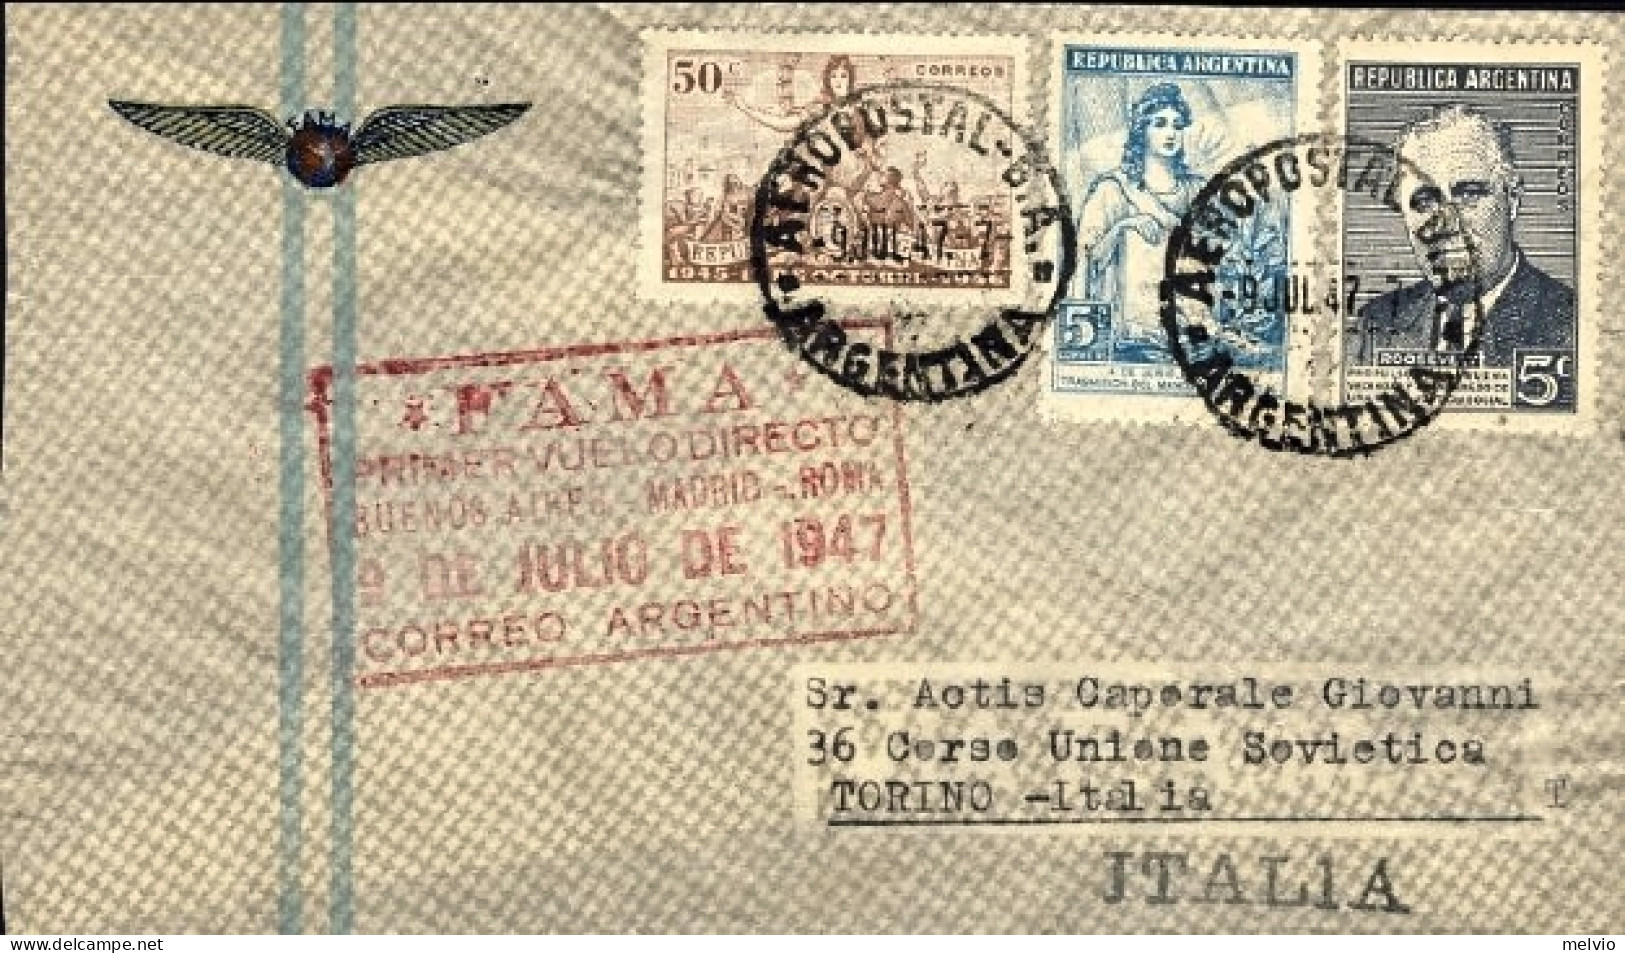 1947-Argentina I^volo Diretto Senza Scalo Per L'Europa F.A.M.A.  Buenos Aires Ro - Luftpost